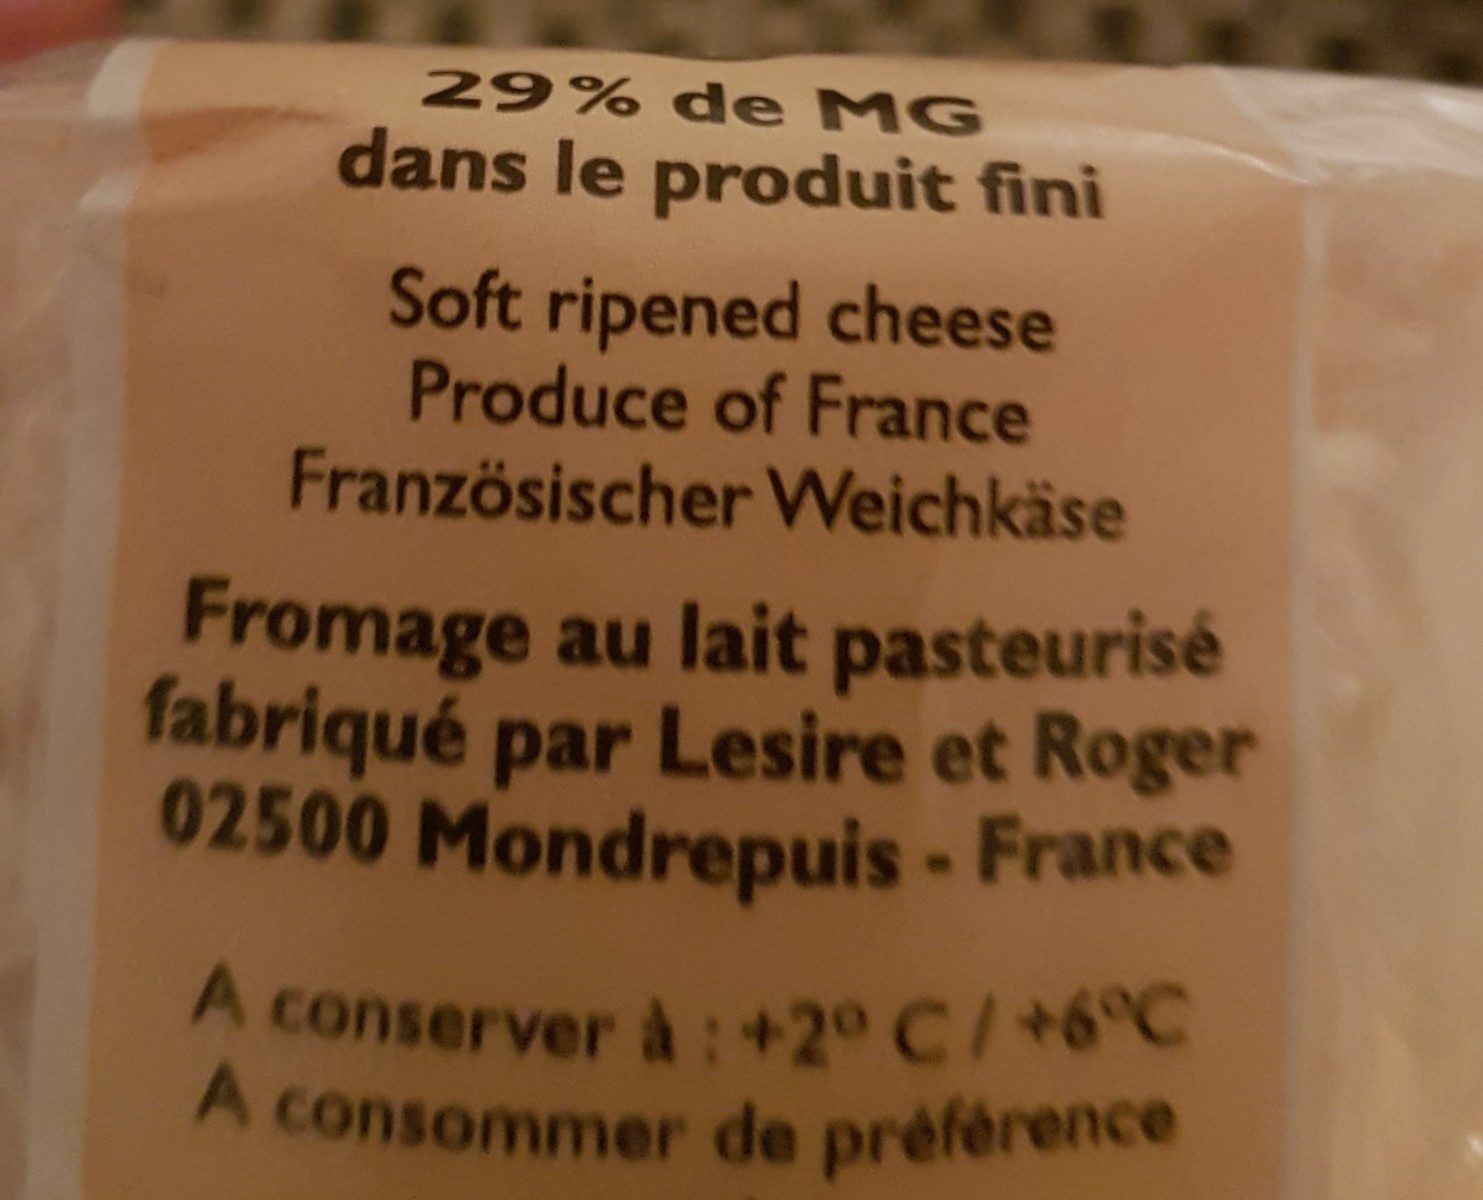 Le Rollot de Picardie - Fromage au lait pasteurisé - Ingredients - fr